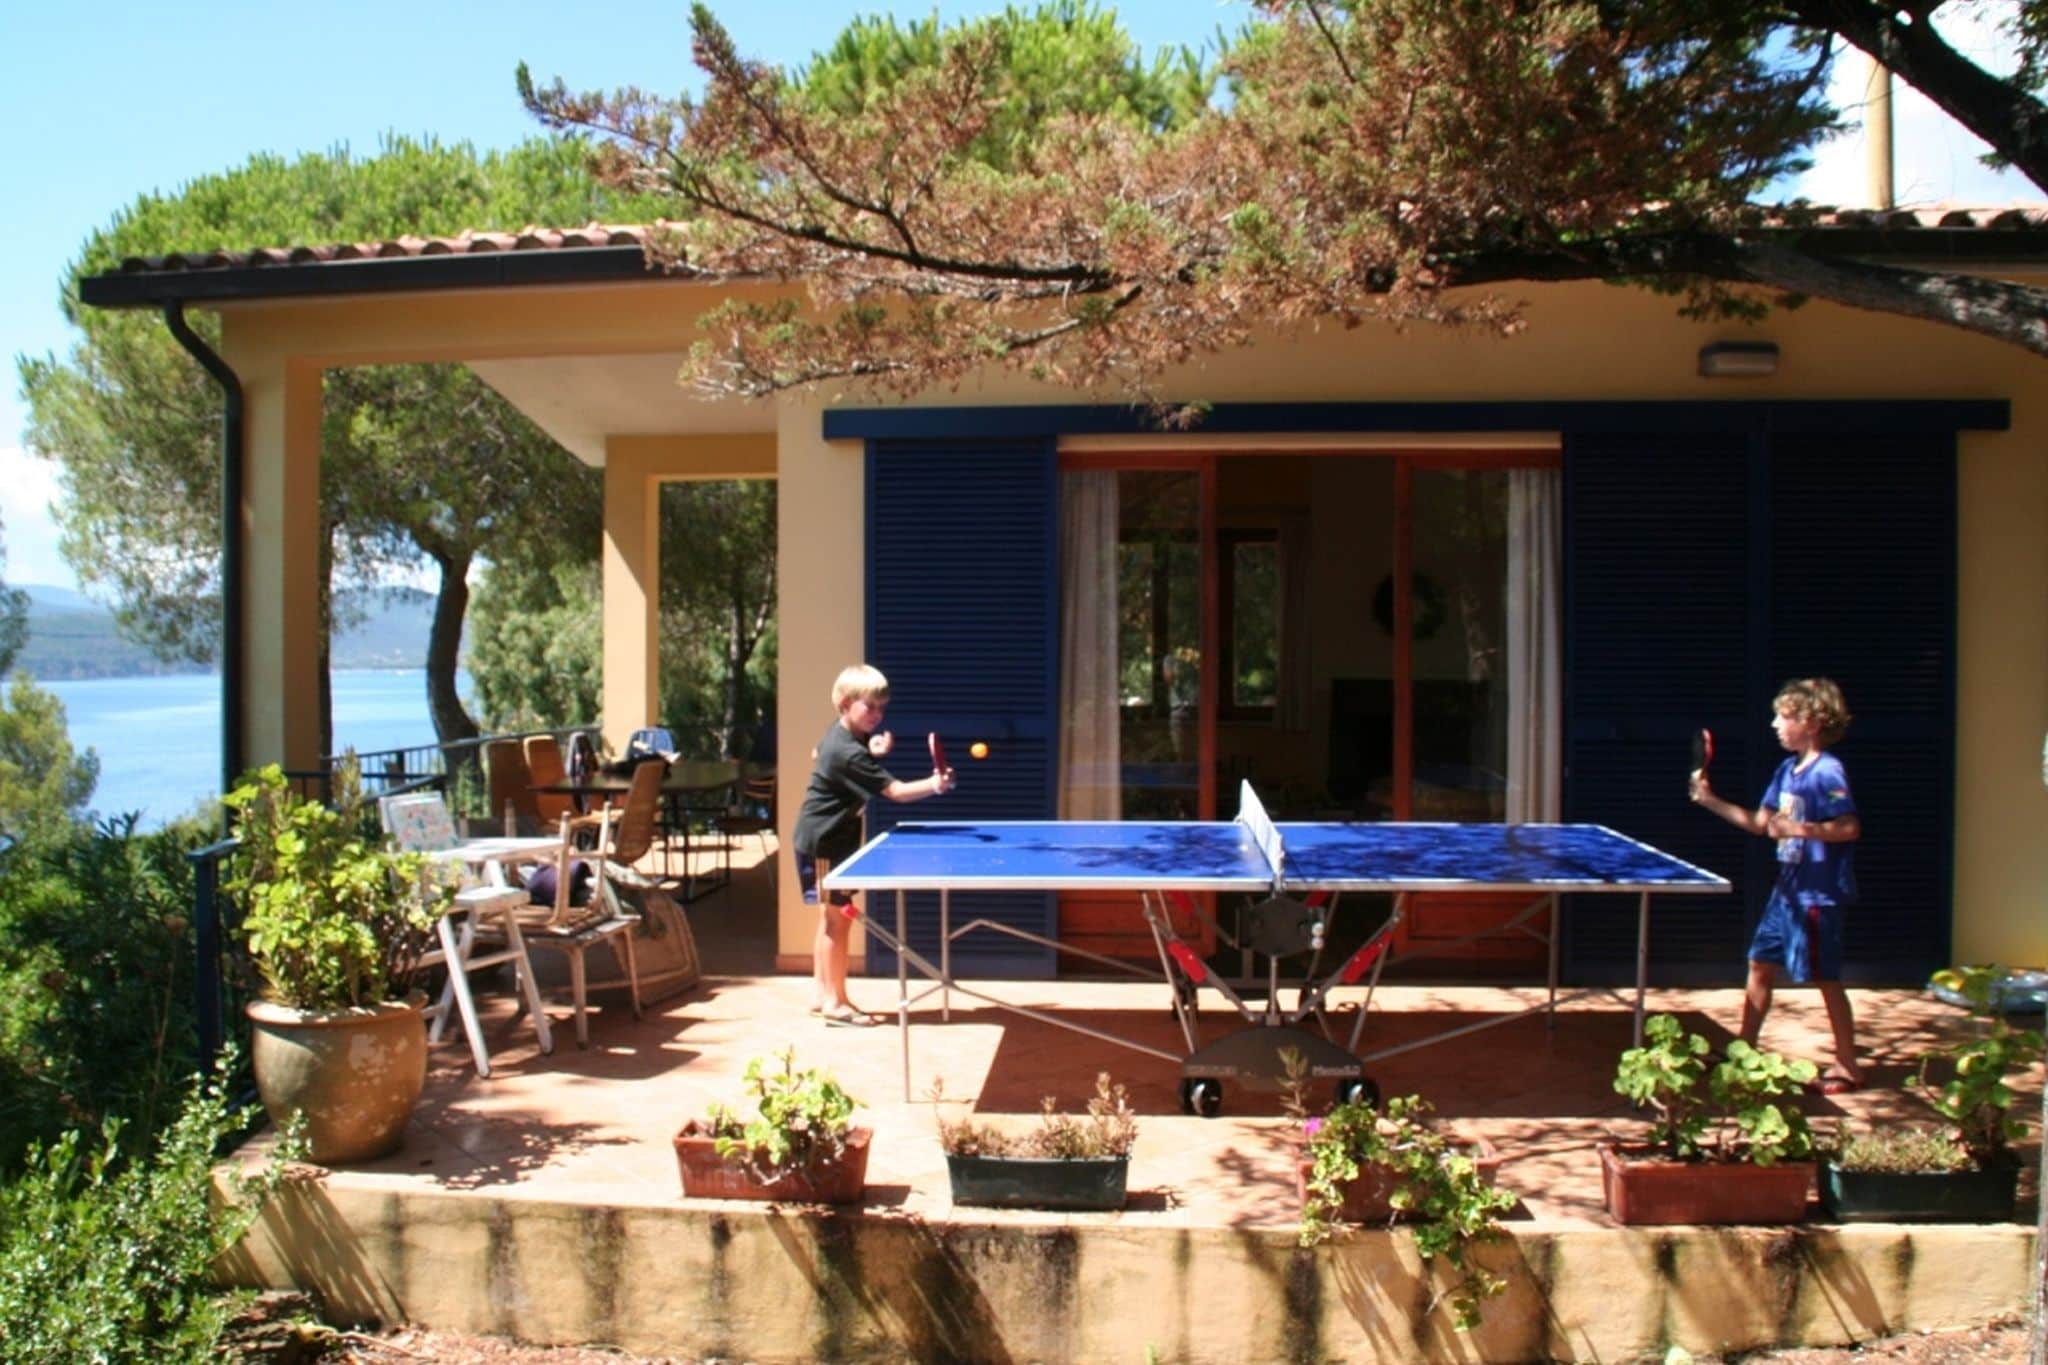 Huis met directe toegang en privé terras aan zee op maar 10min van Capoliveri